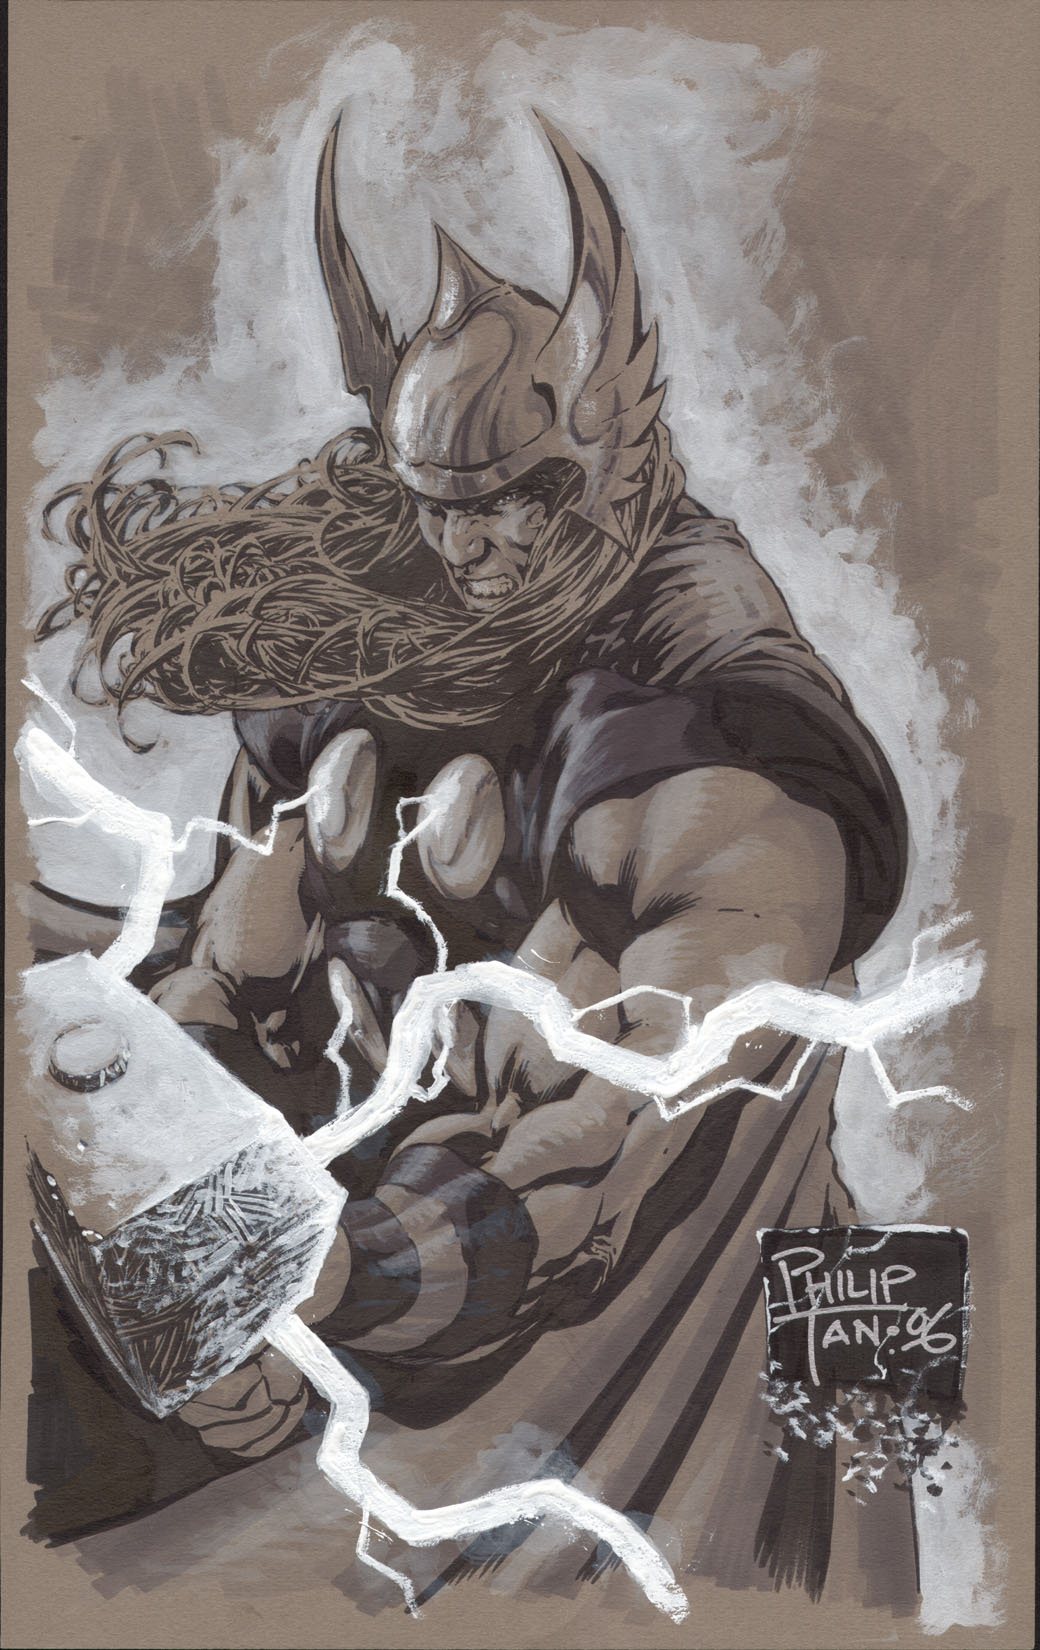 Thor Sketch